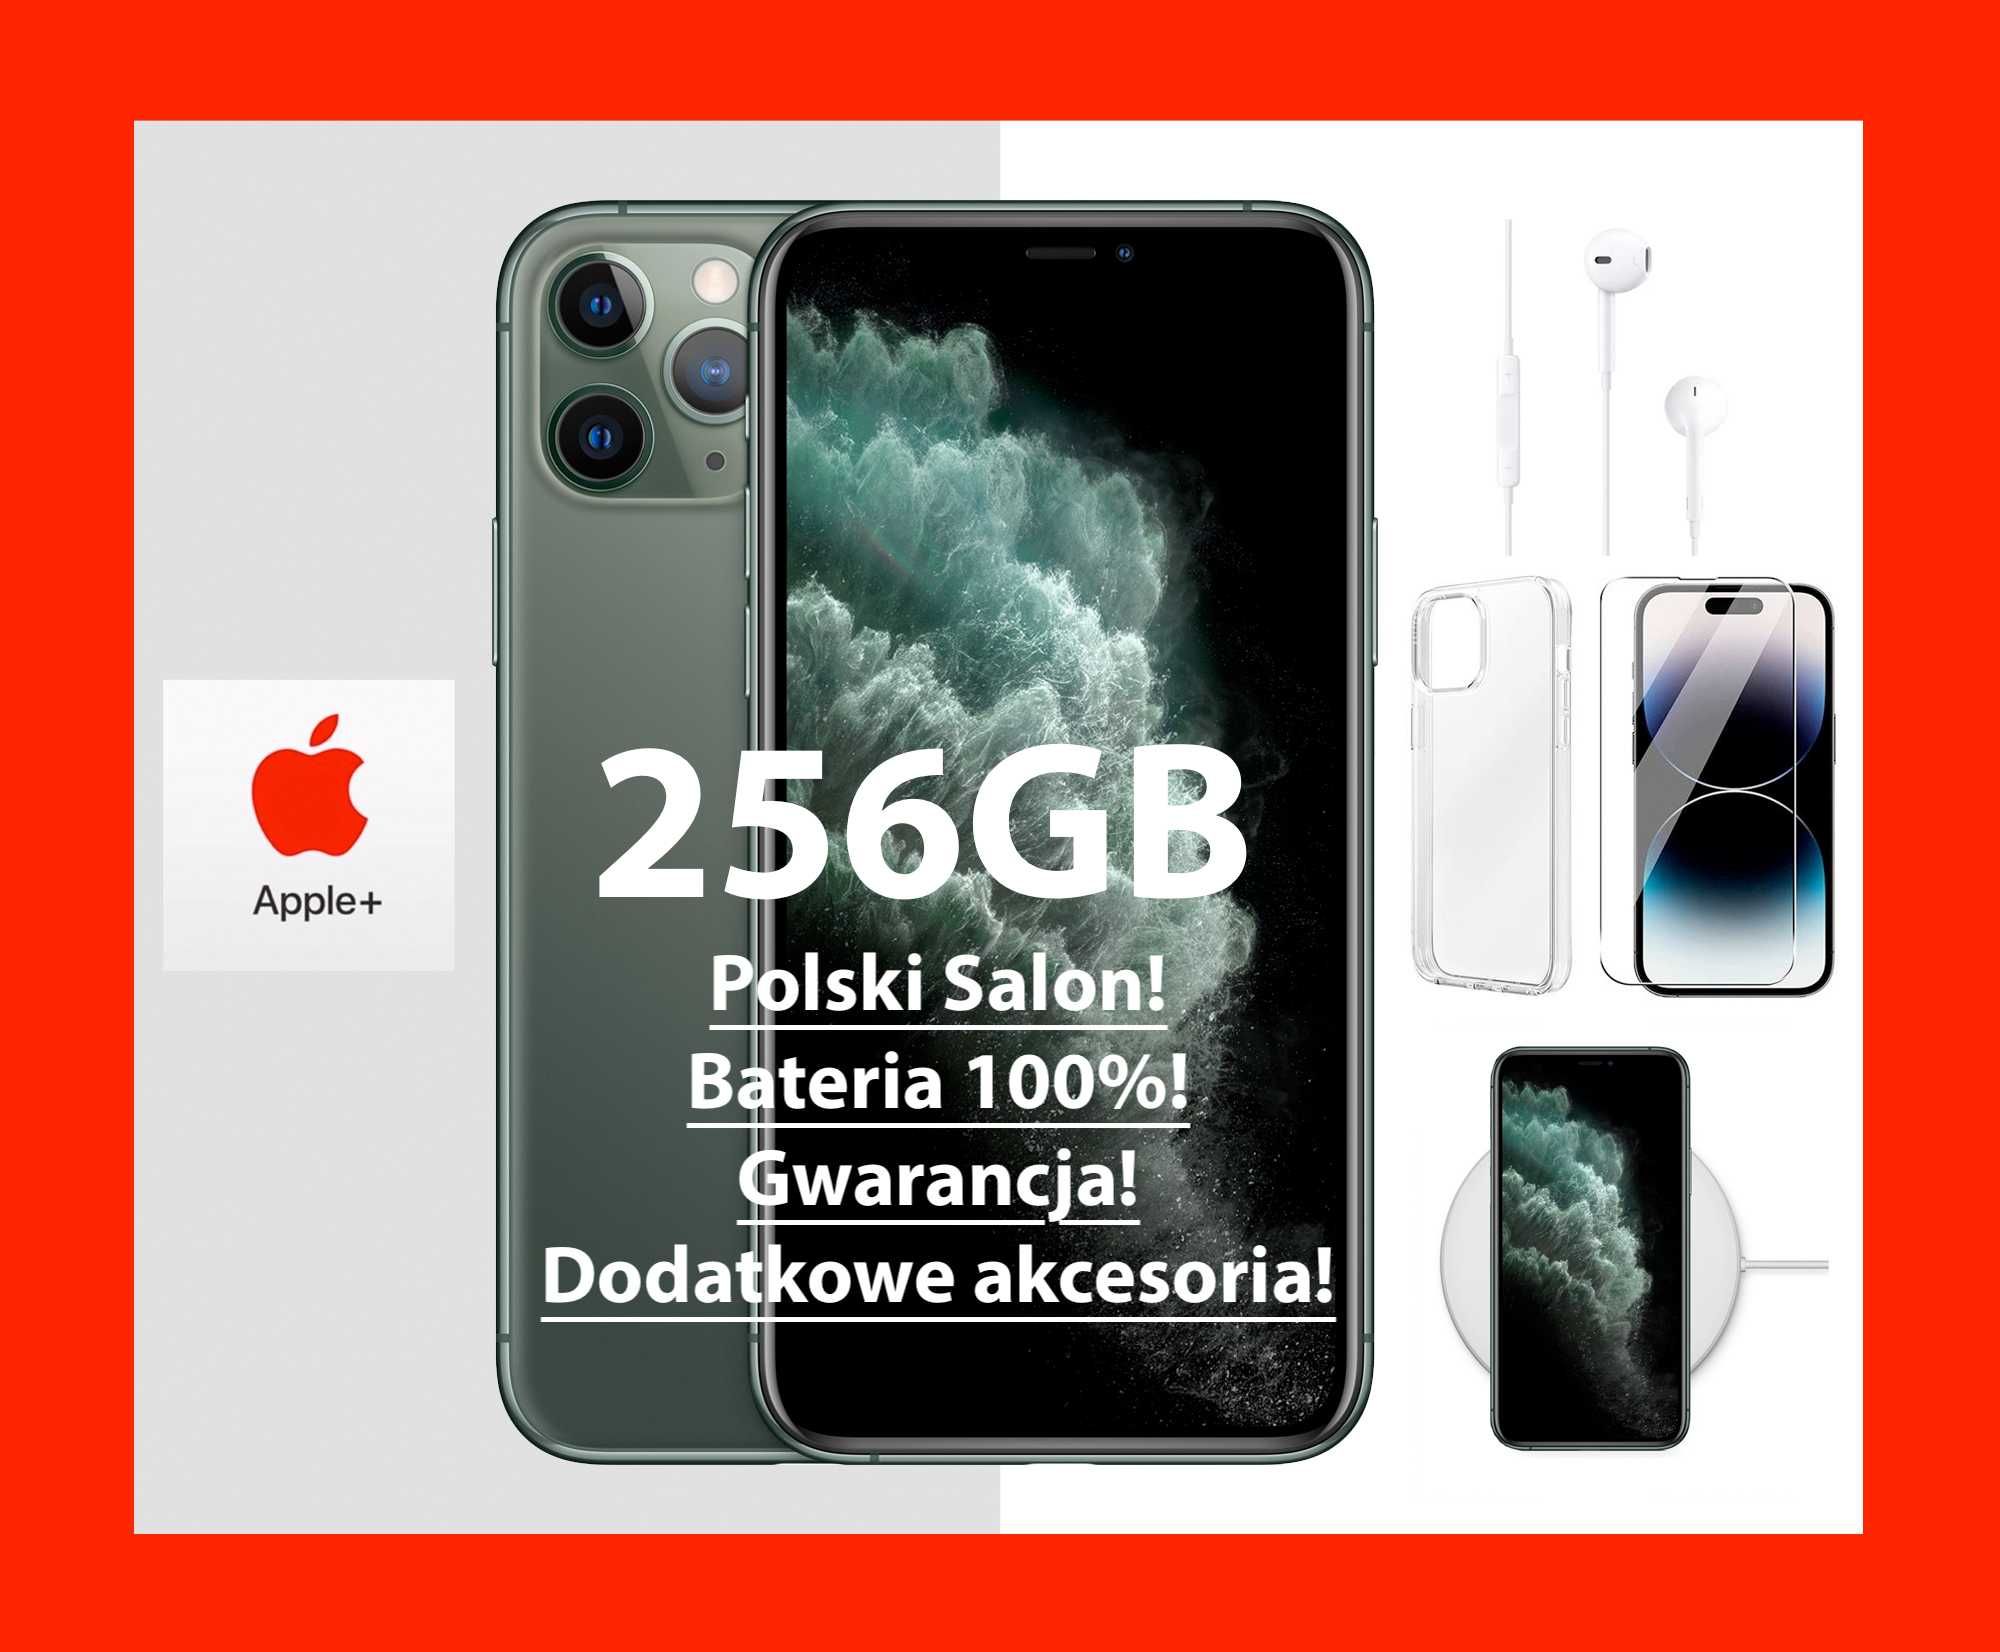 I. NOWY Apple iPhone 11 Pro 256GB Folie! BATERIA 100% PL GWAR+DODATKI!